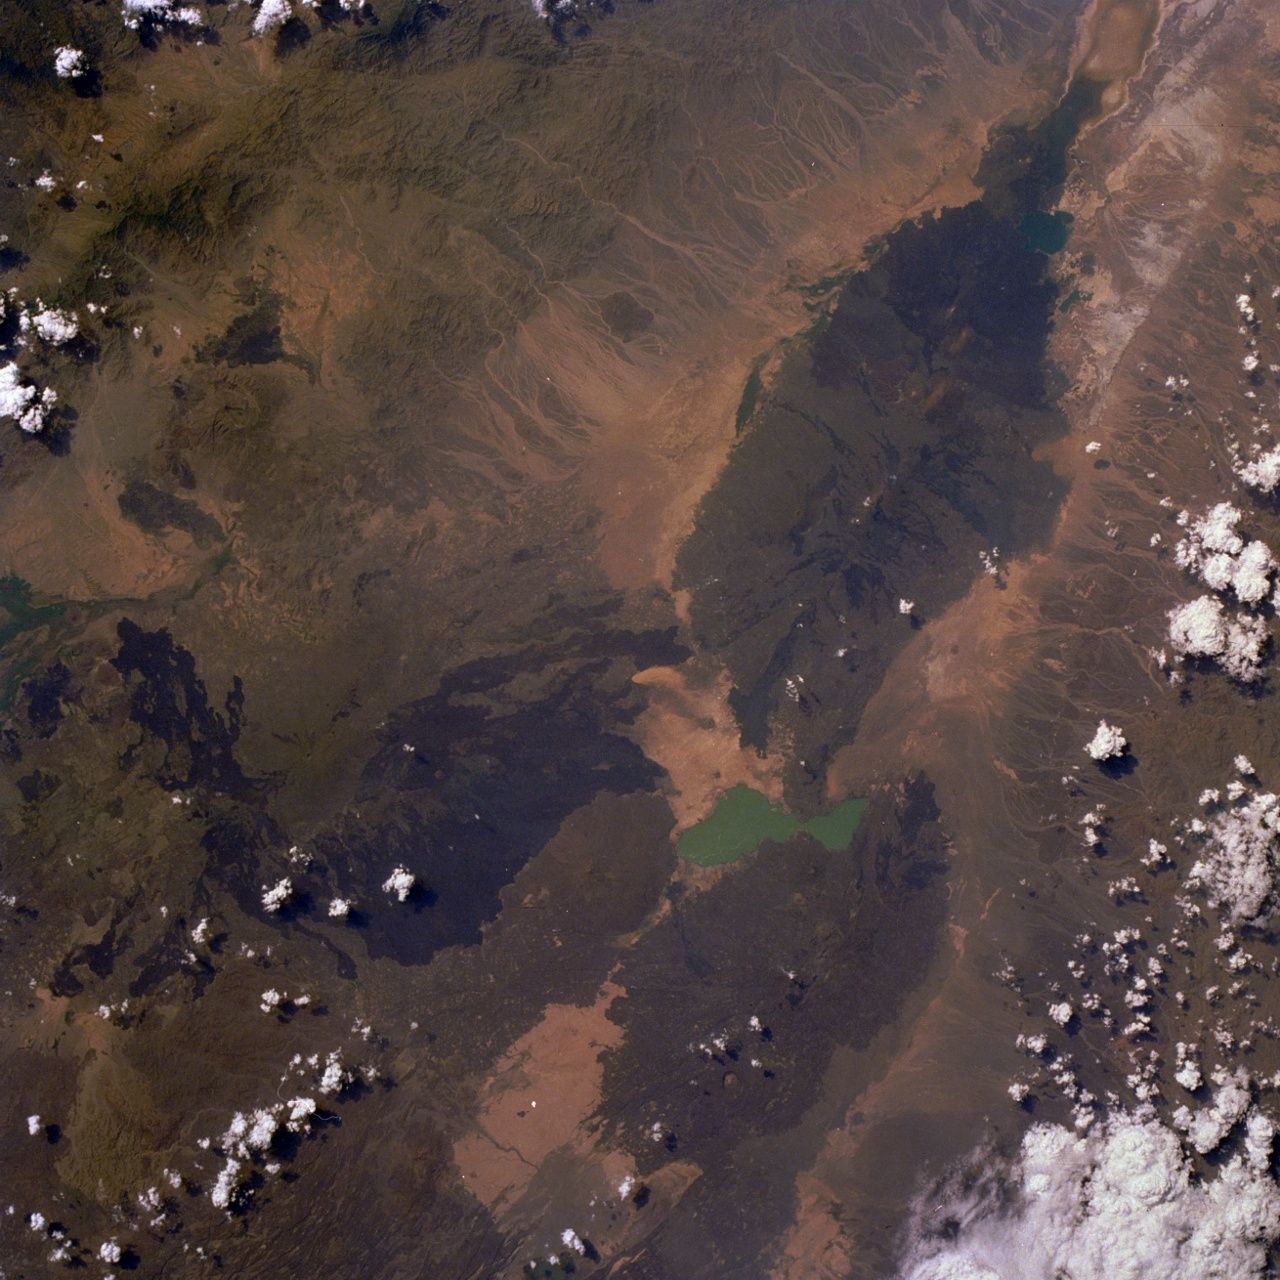 Le massif de l'Erta Ale - photo NASA  STS026-033-080 / 30.09.1988 - 11h35 GMT (L’ Erta Ale, un volcan situé dans la vallée du rift du nord de l’Ethiopie, est visible sur cette photo prise quasi à la verticale au nord du lac Afrera, de couleur turquoise. Le volcan, connu sous le nom de « montagne qui fume » par les tribus locales, possède un lac de lave actif (peu discernable sur la photo) d’approximativement 46 mètres de large, qui est en éruption quasi constante depuis la fin des années 60.)